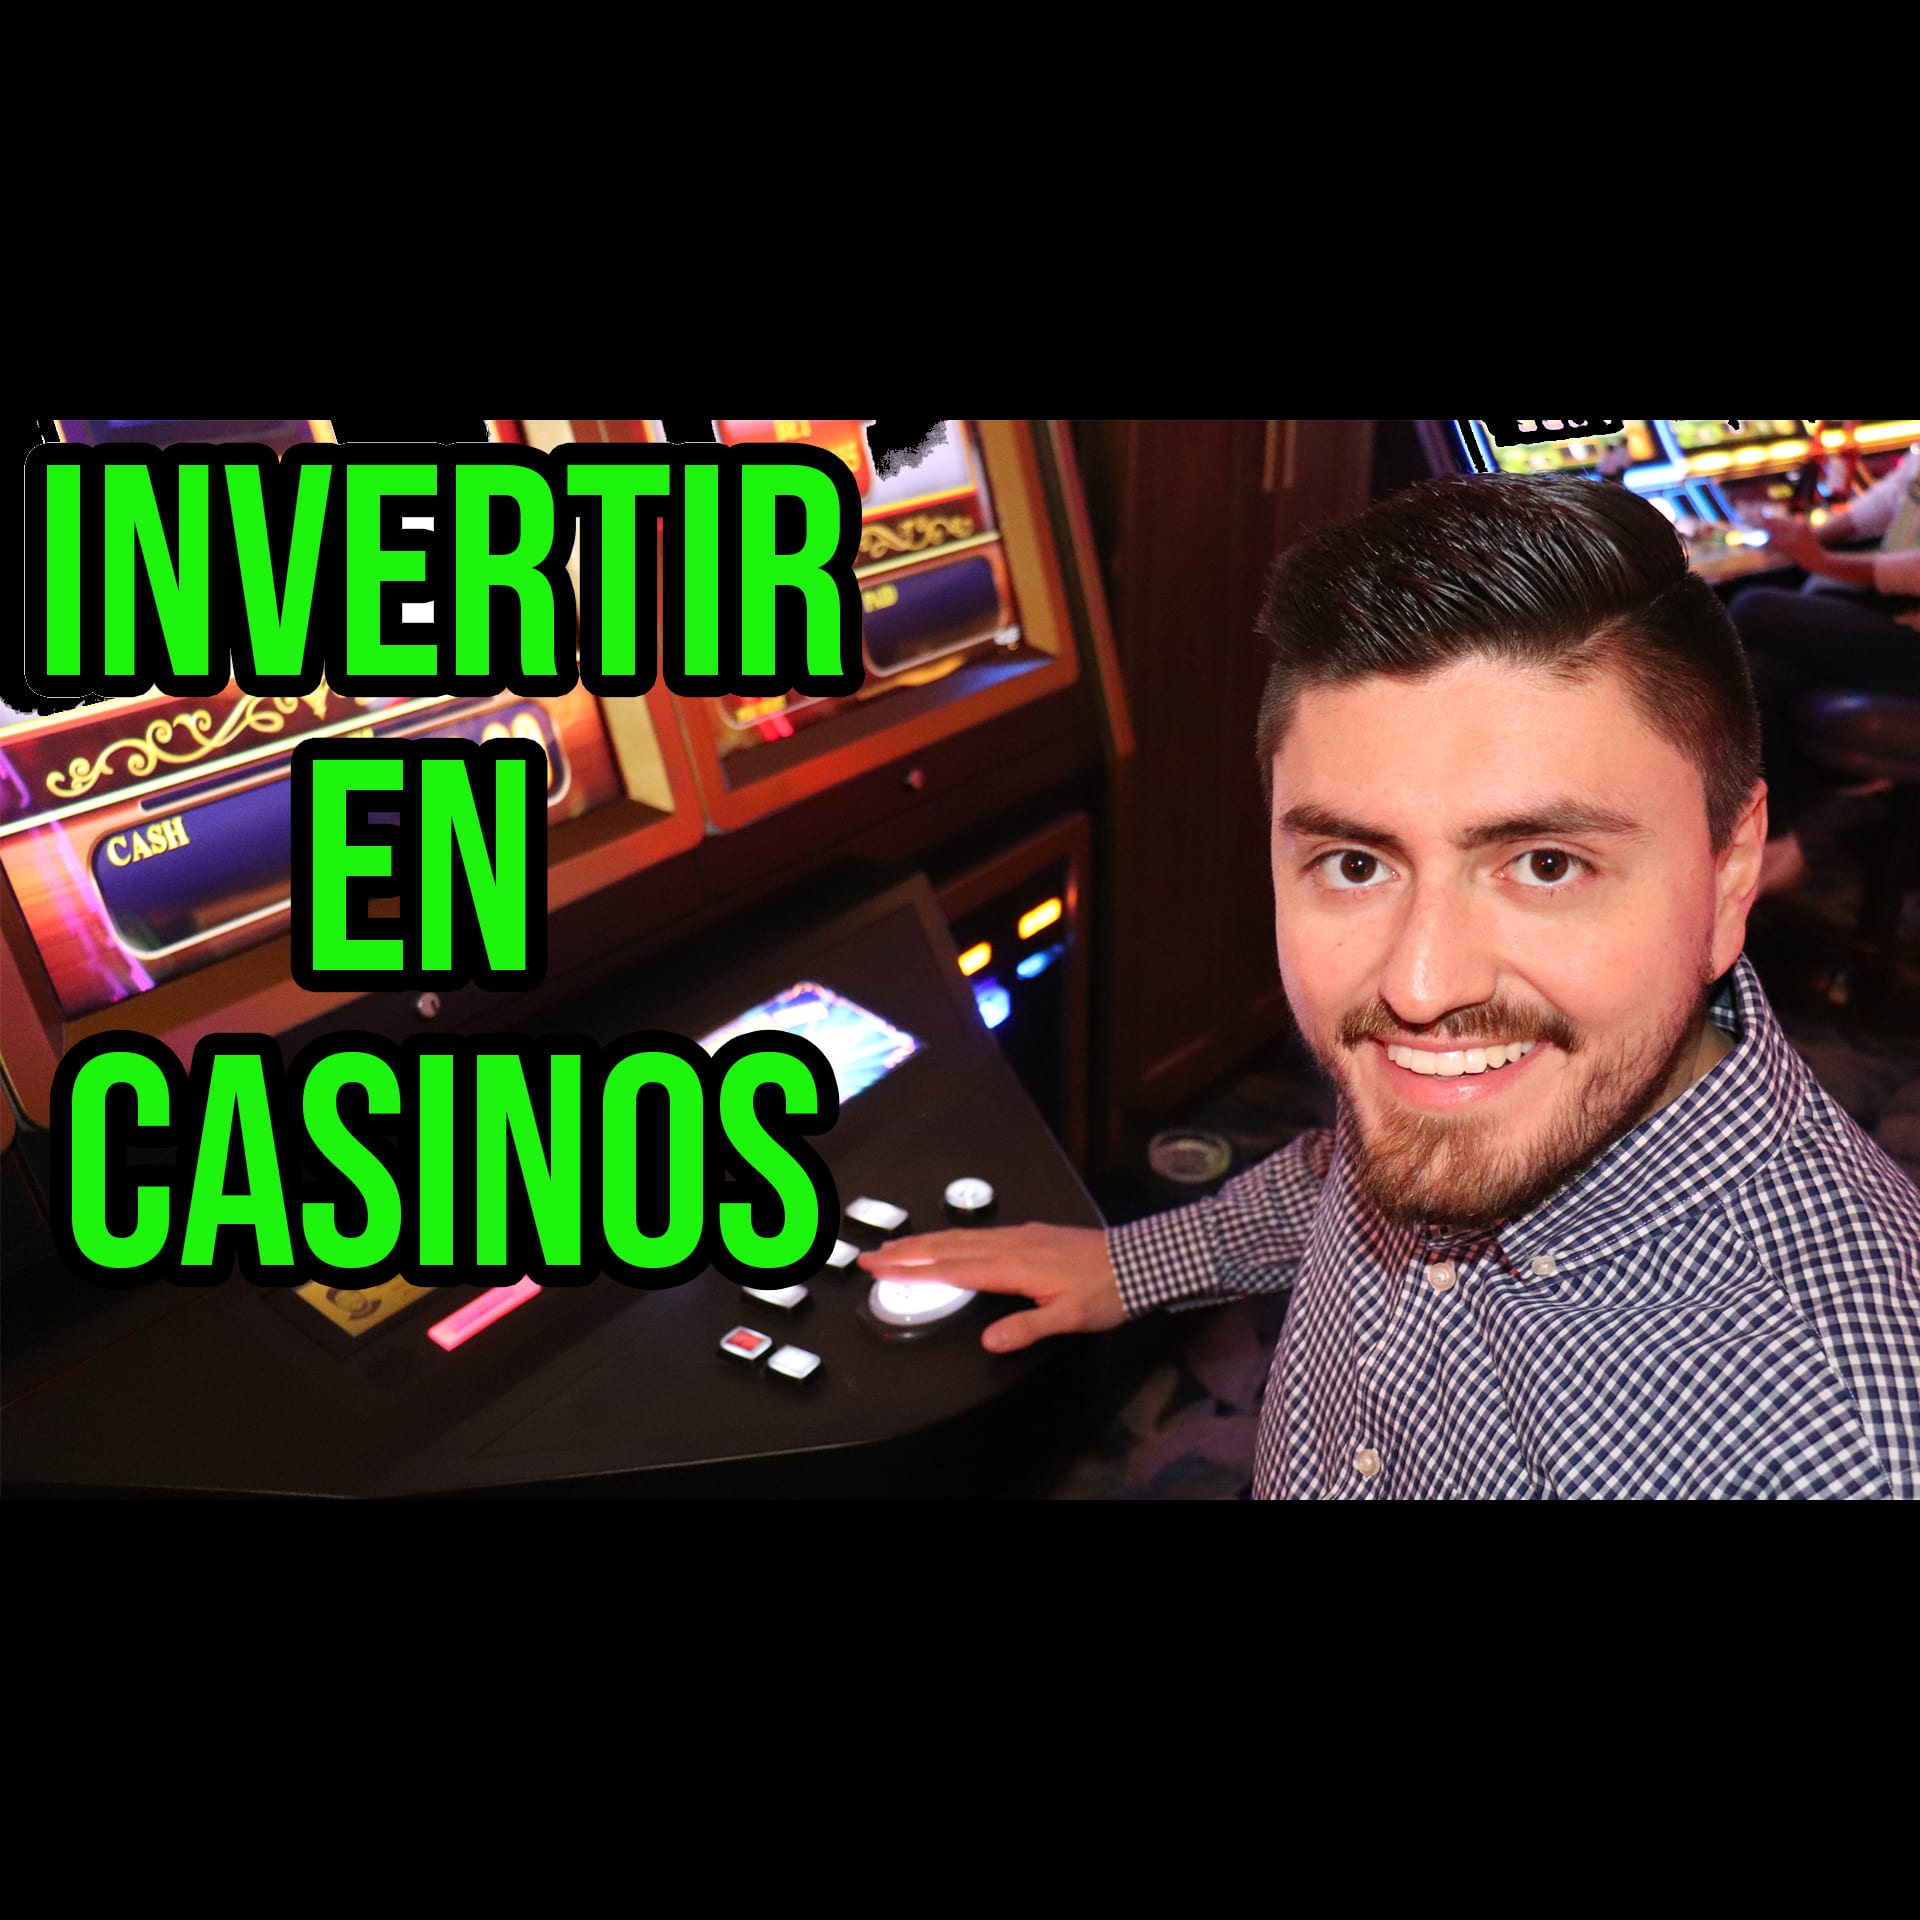 hotales y casinos de boyd gaming corporation